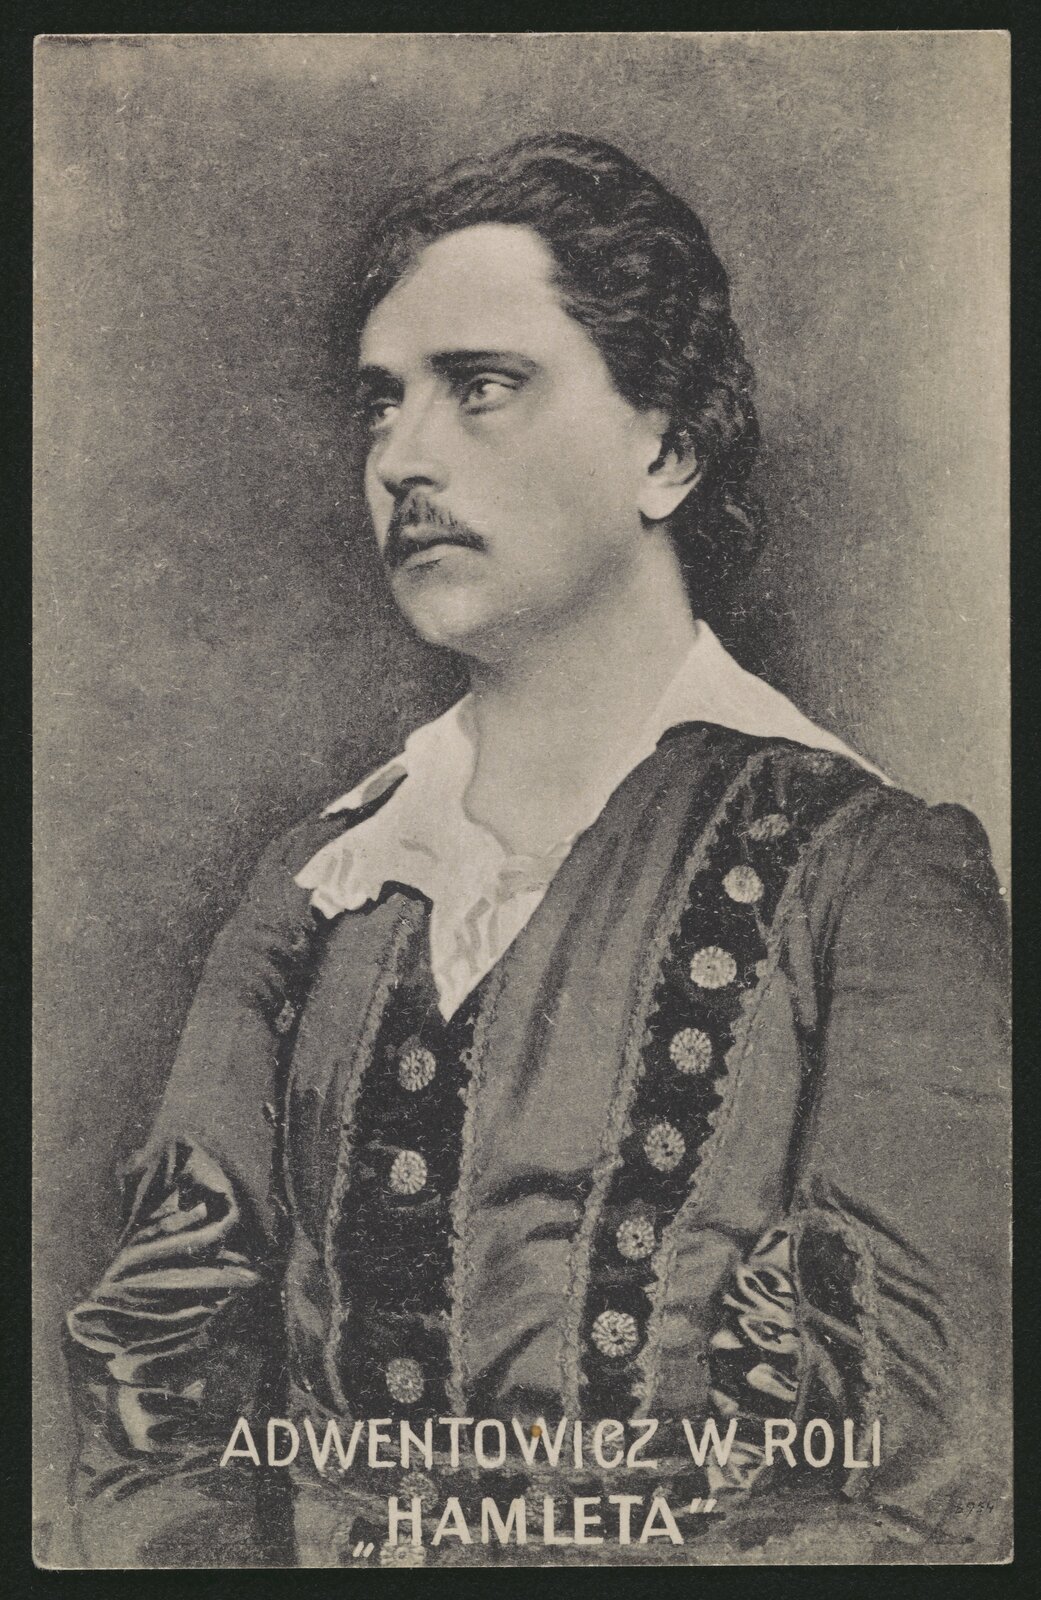 Czarno-biała fotografia przedstawia zamyślonego mężczyznę z wąsikiem. Mężczyzna ma bujne włosy zaczesane do tyłu i wysokie czoło. Ubrany jest w szatę z białym kołnierzem. Na dole napis "Adwentowicz w roli Hamleta".